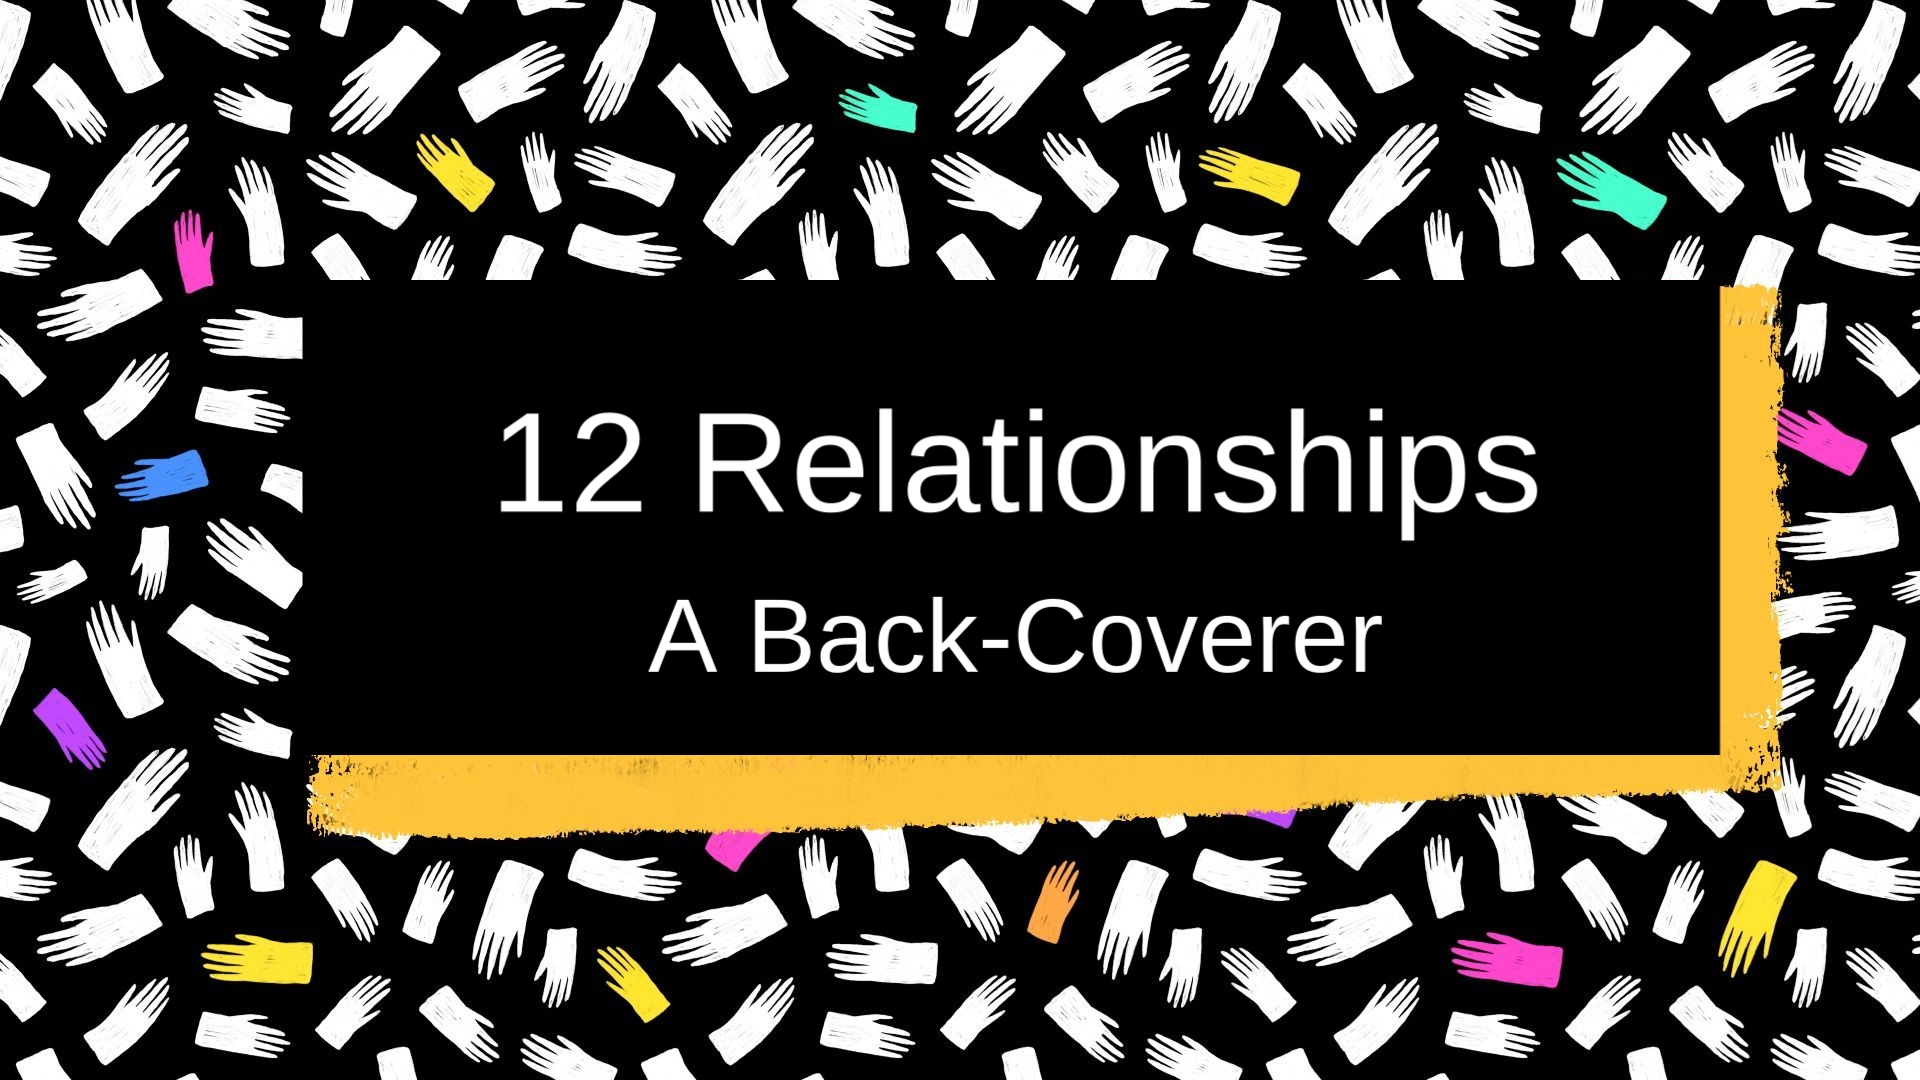 12 Relationships: A Back-Coverer